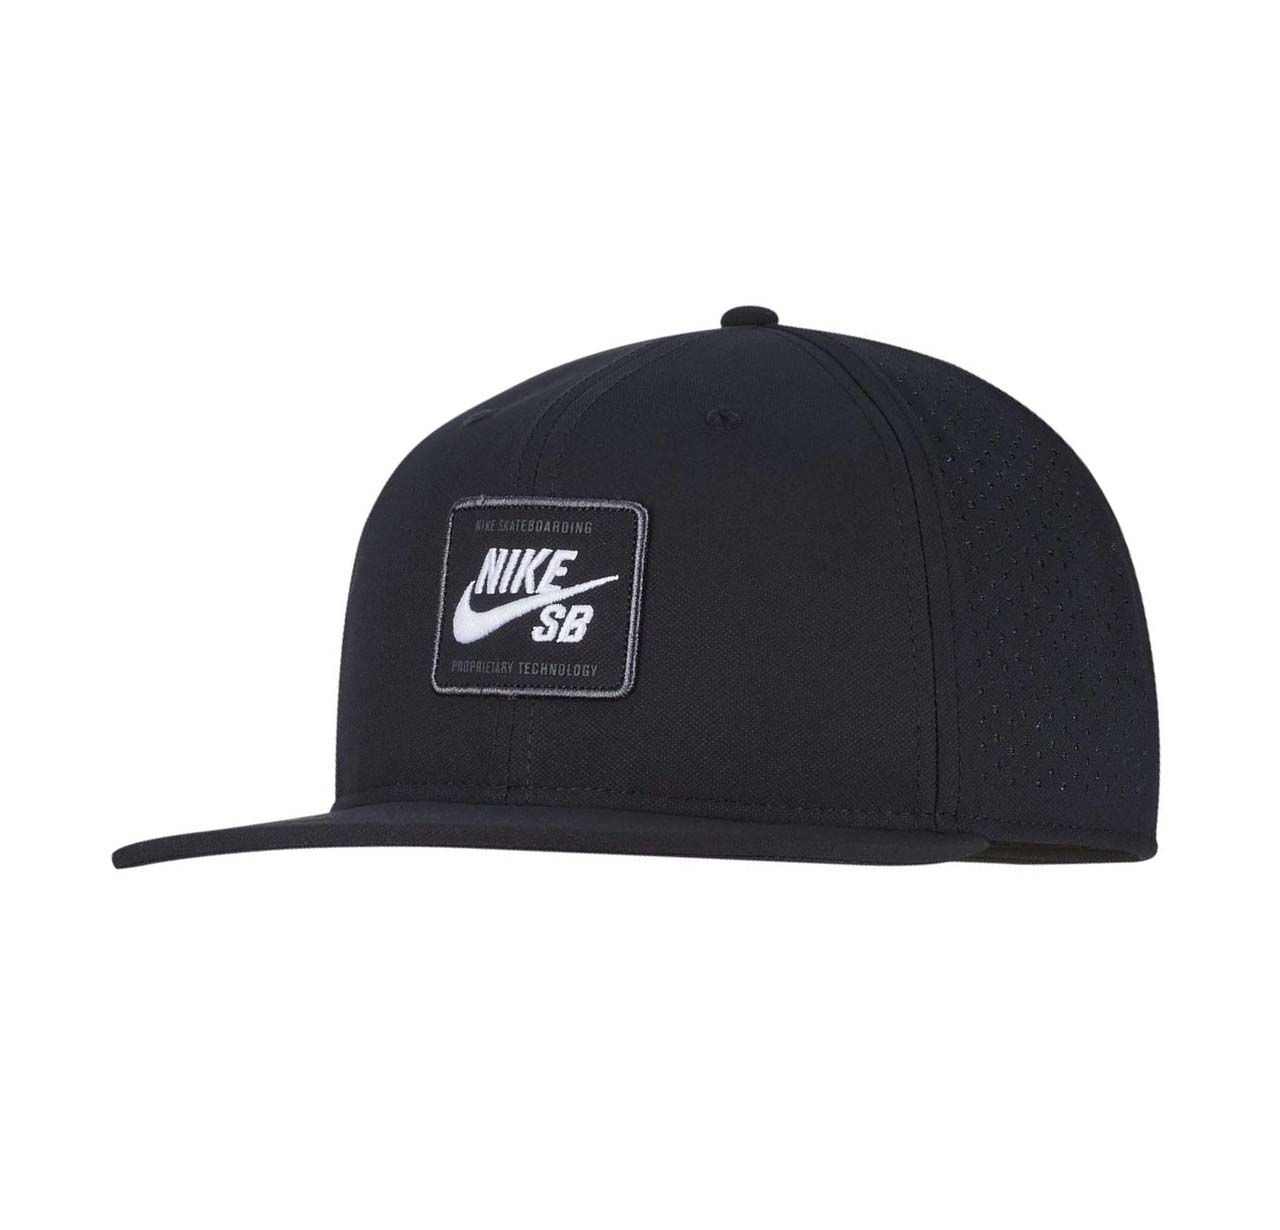 Nike SB Plain Black Cap